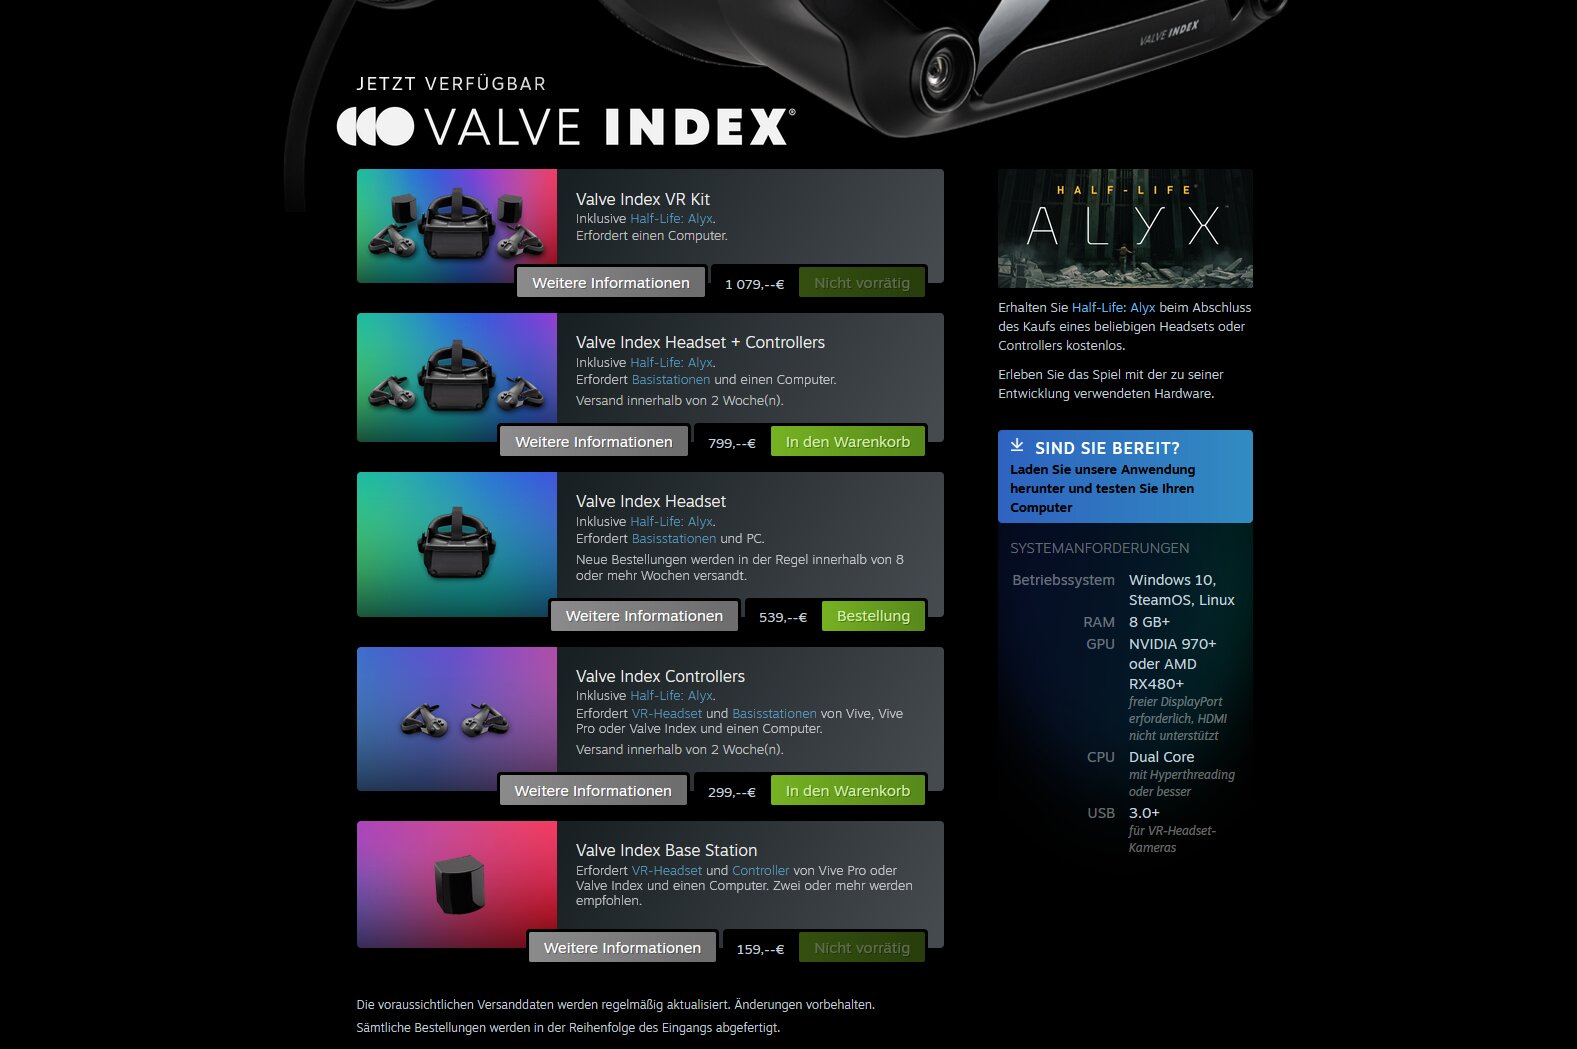 Die Valve Index ist aktuell nicht oder nur schwer zu bekommen